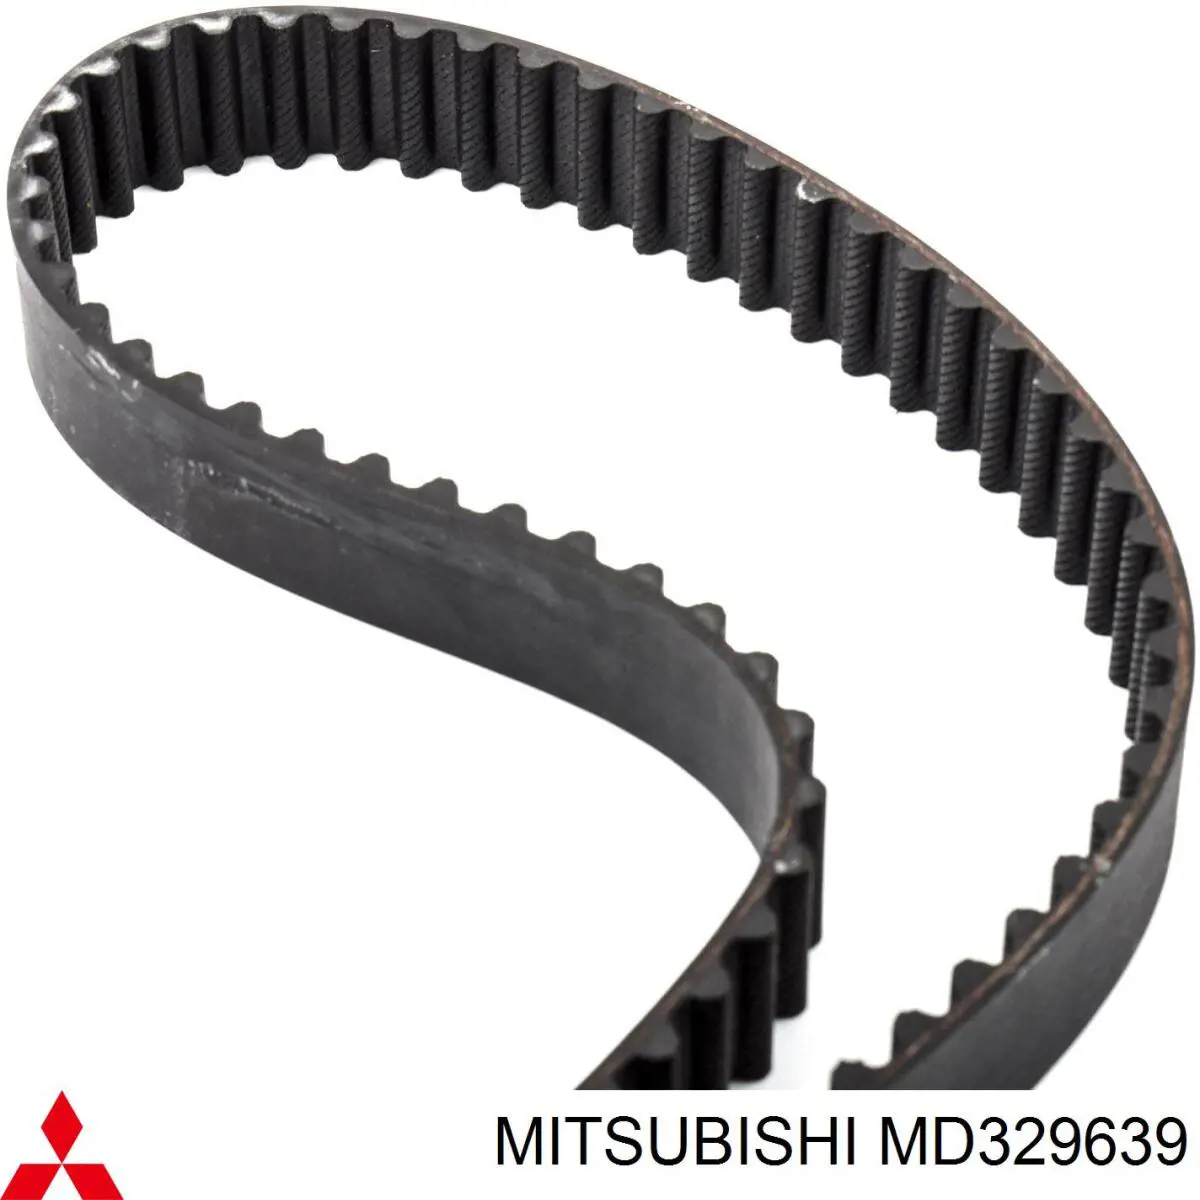 MD329639 Mitsubishi correa distribucion